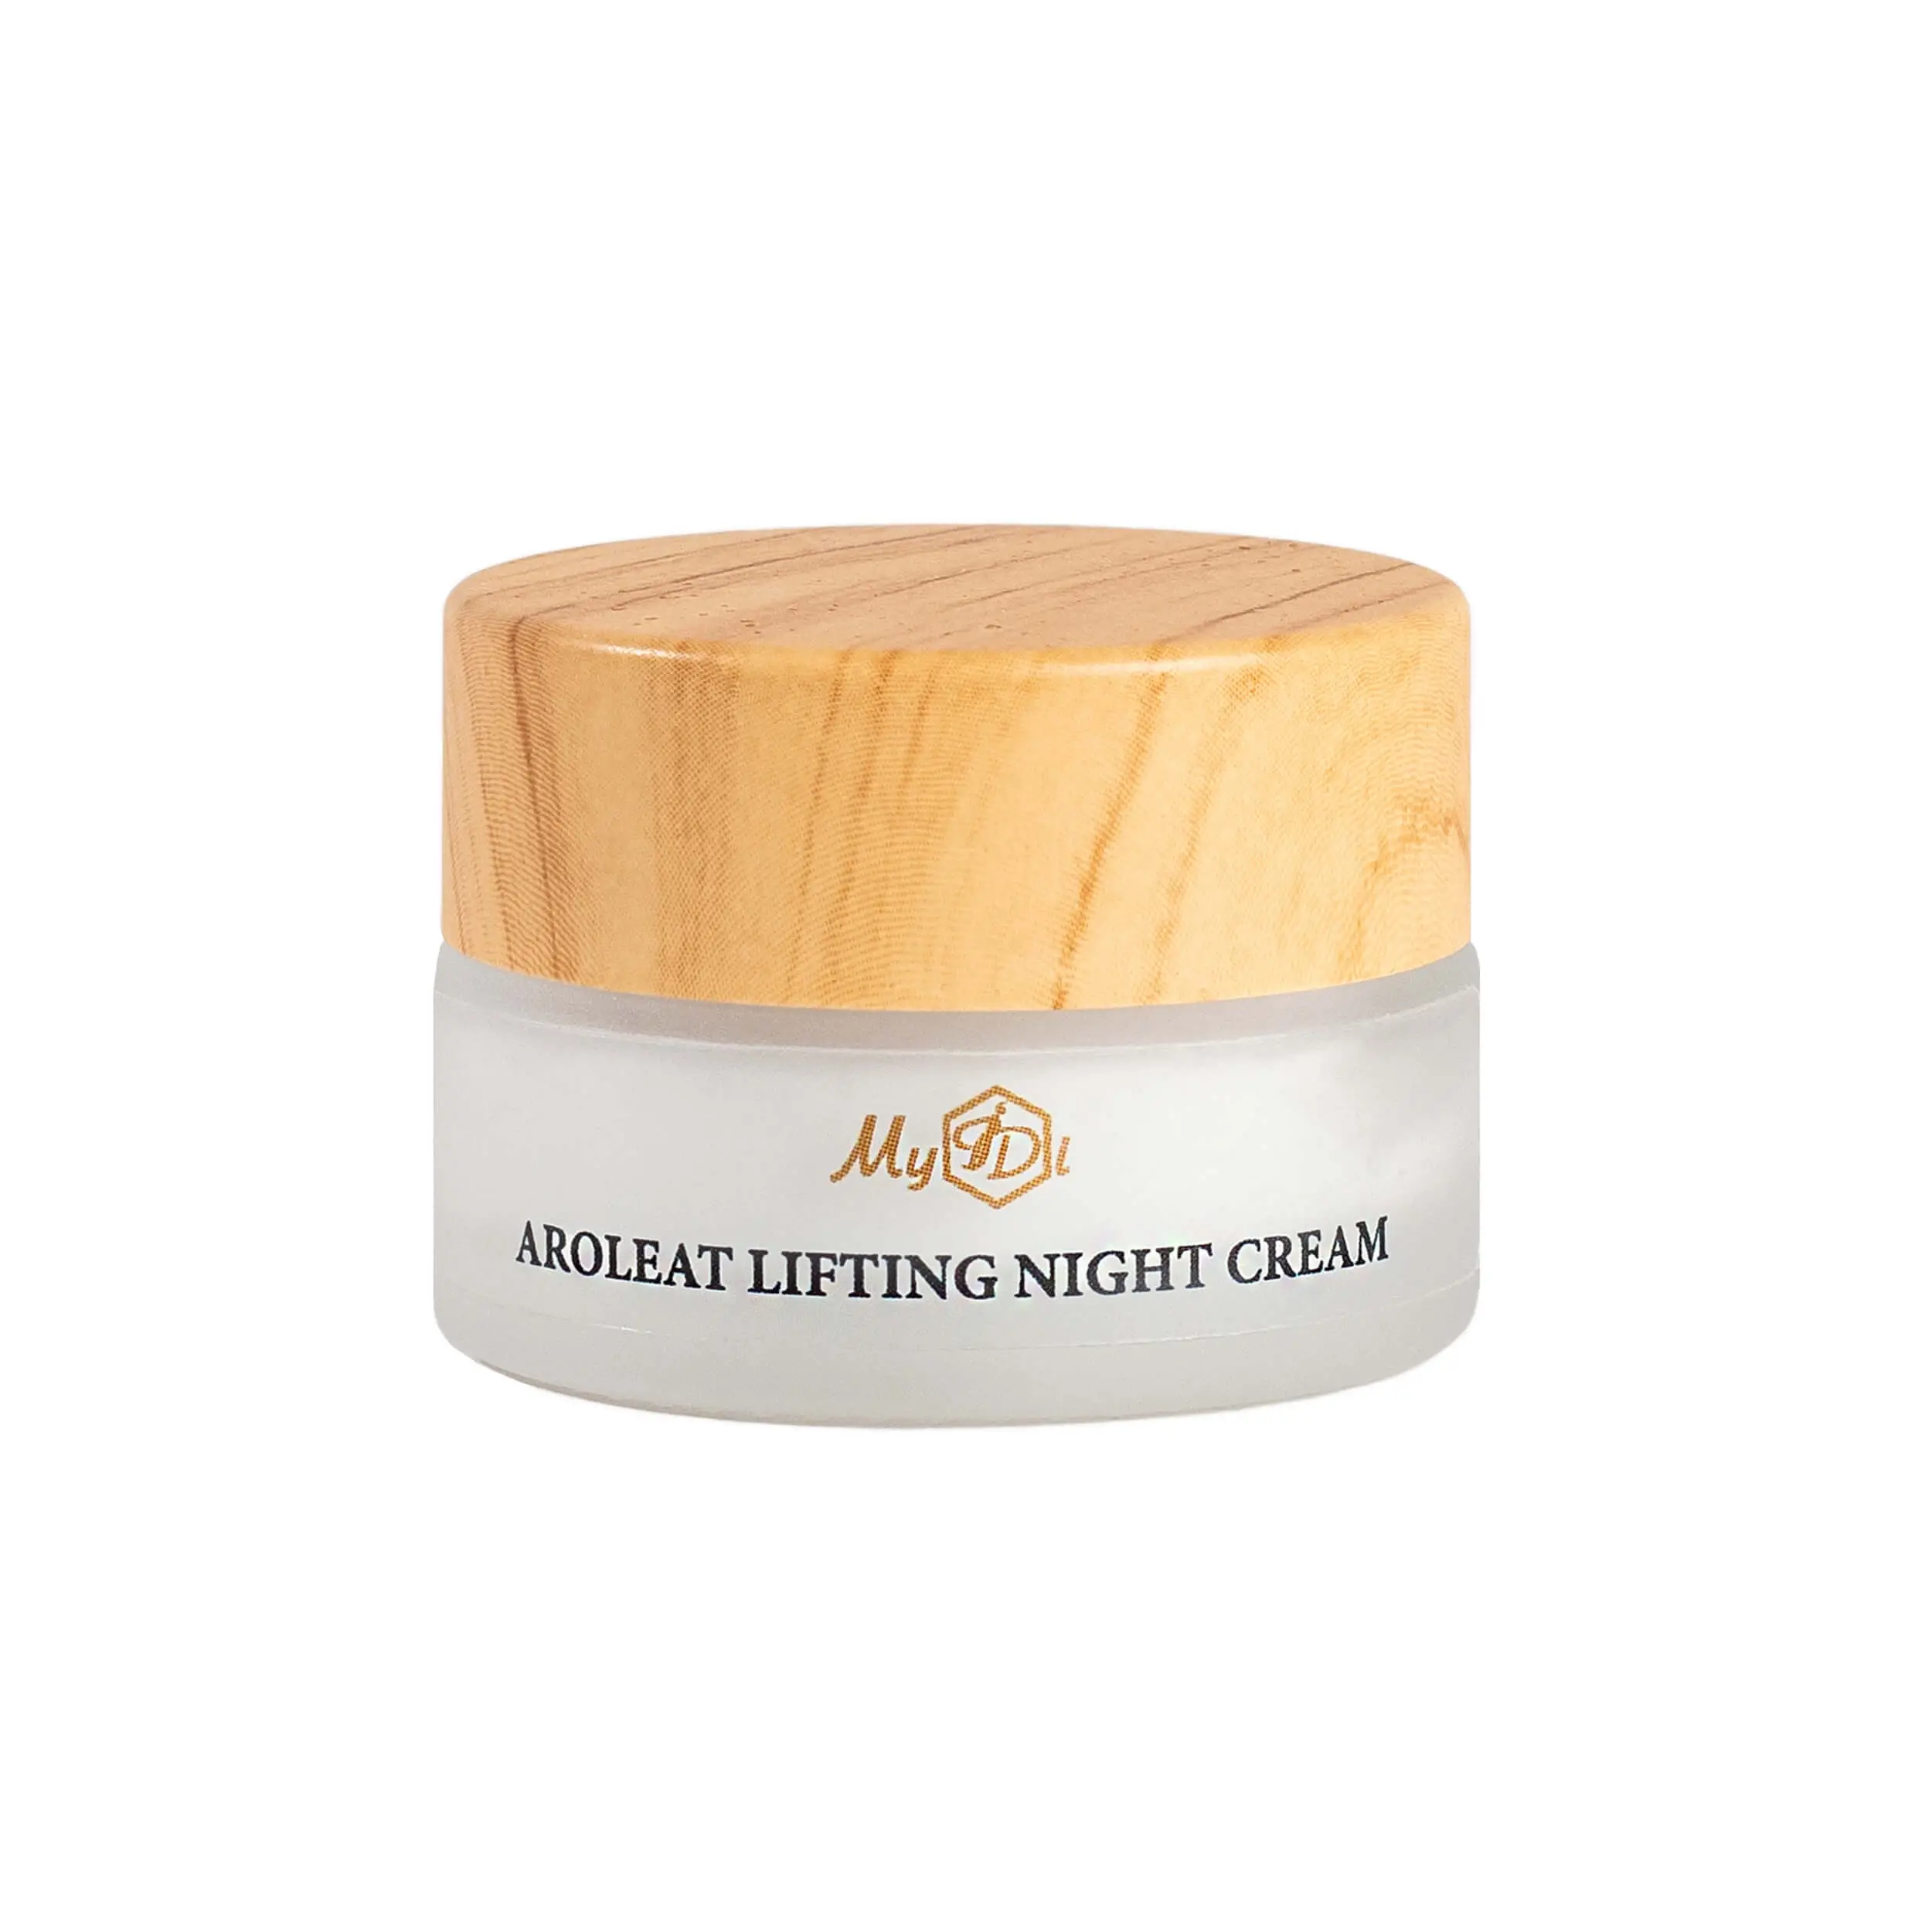 Липосомальный ночной филлер лифтинг-крем AGE GUARDIAN AROLEAT LIFTING NIGHT CREAM (пробник), 5 мл